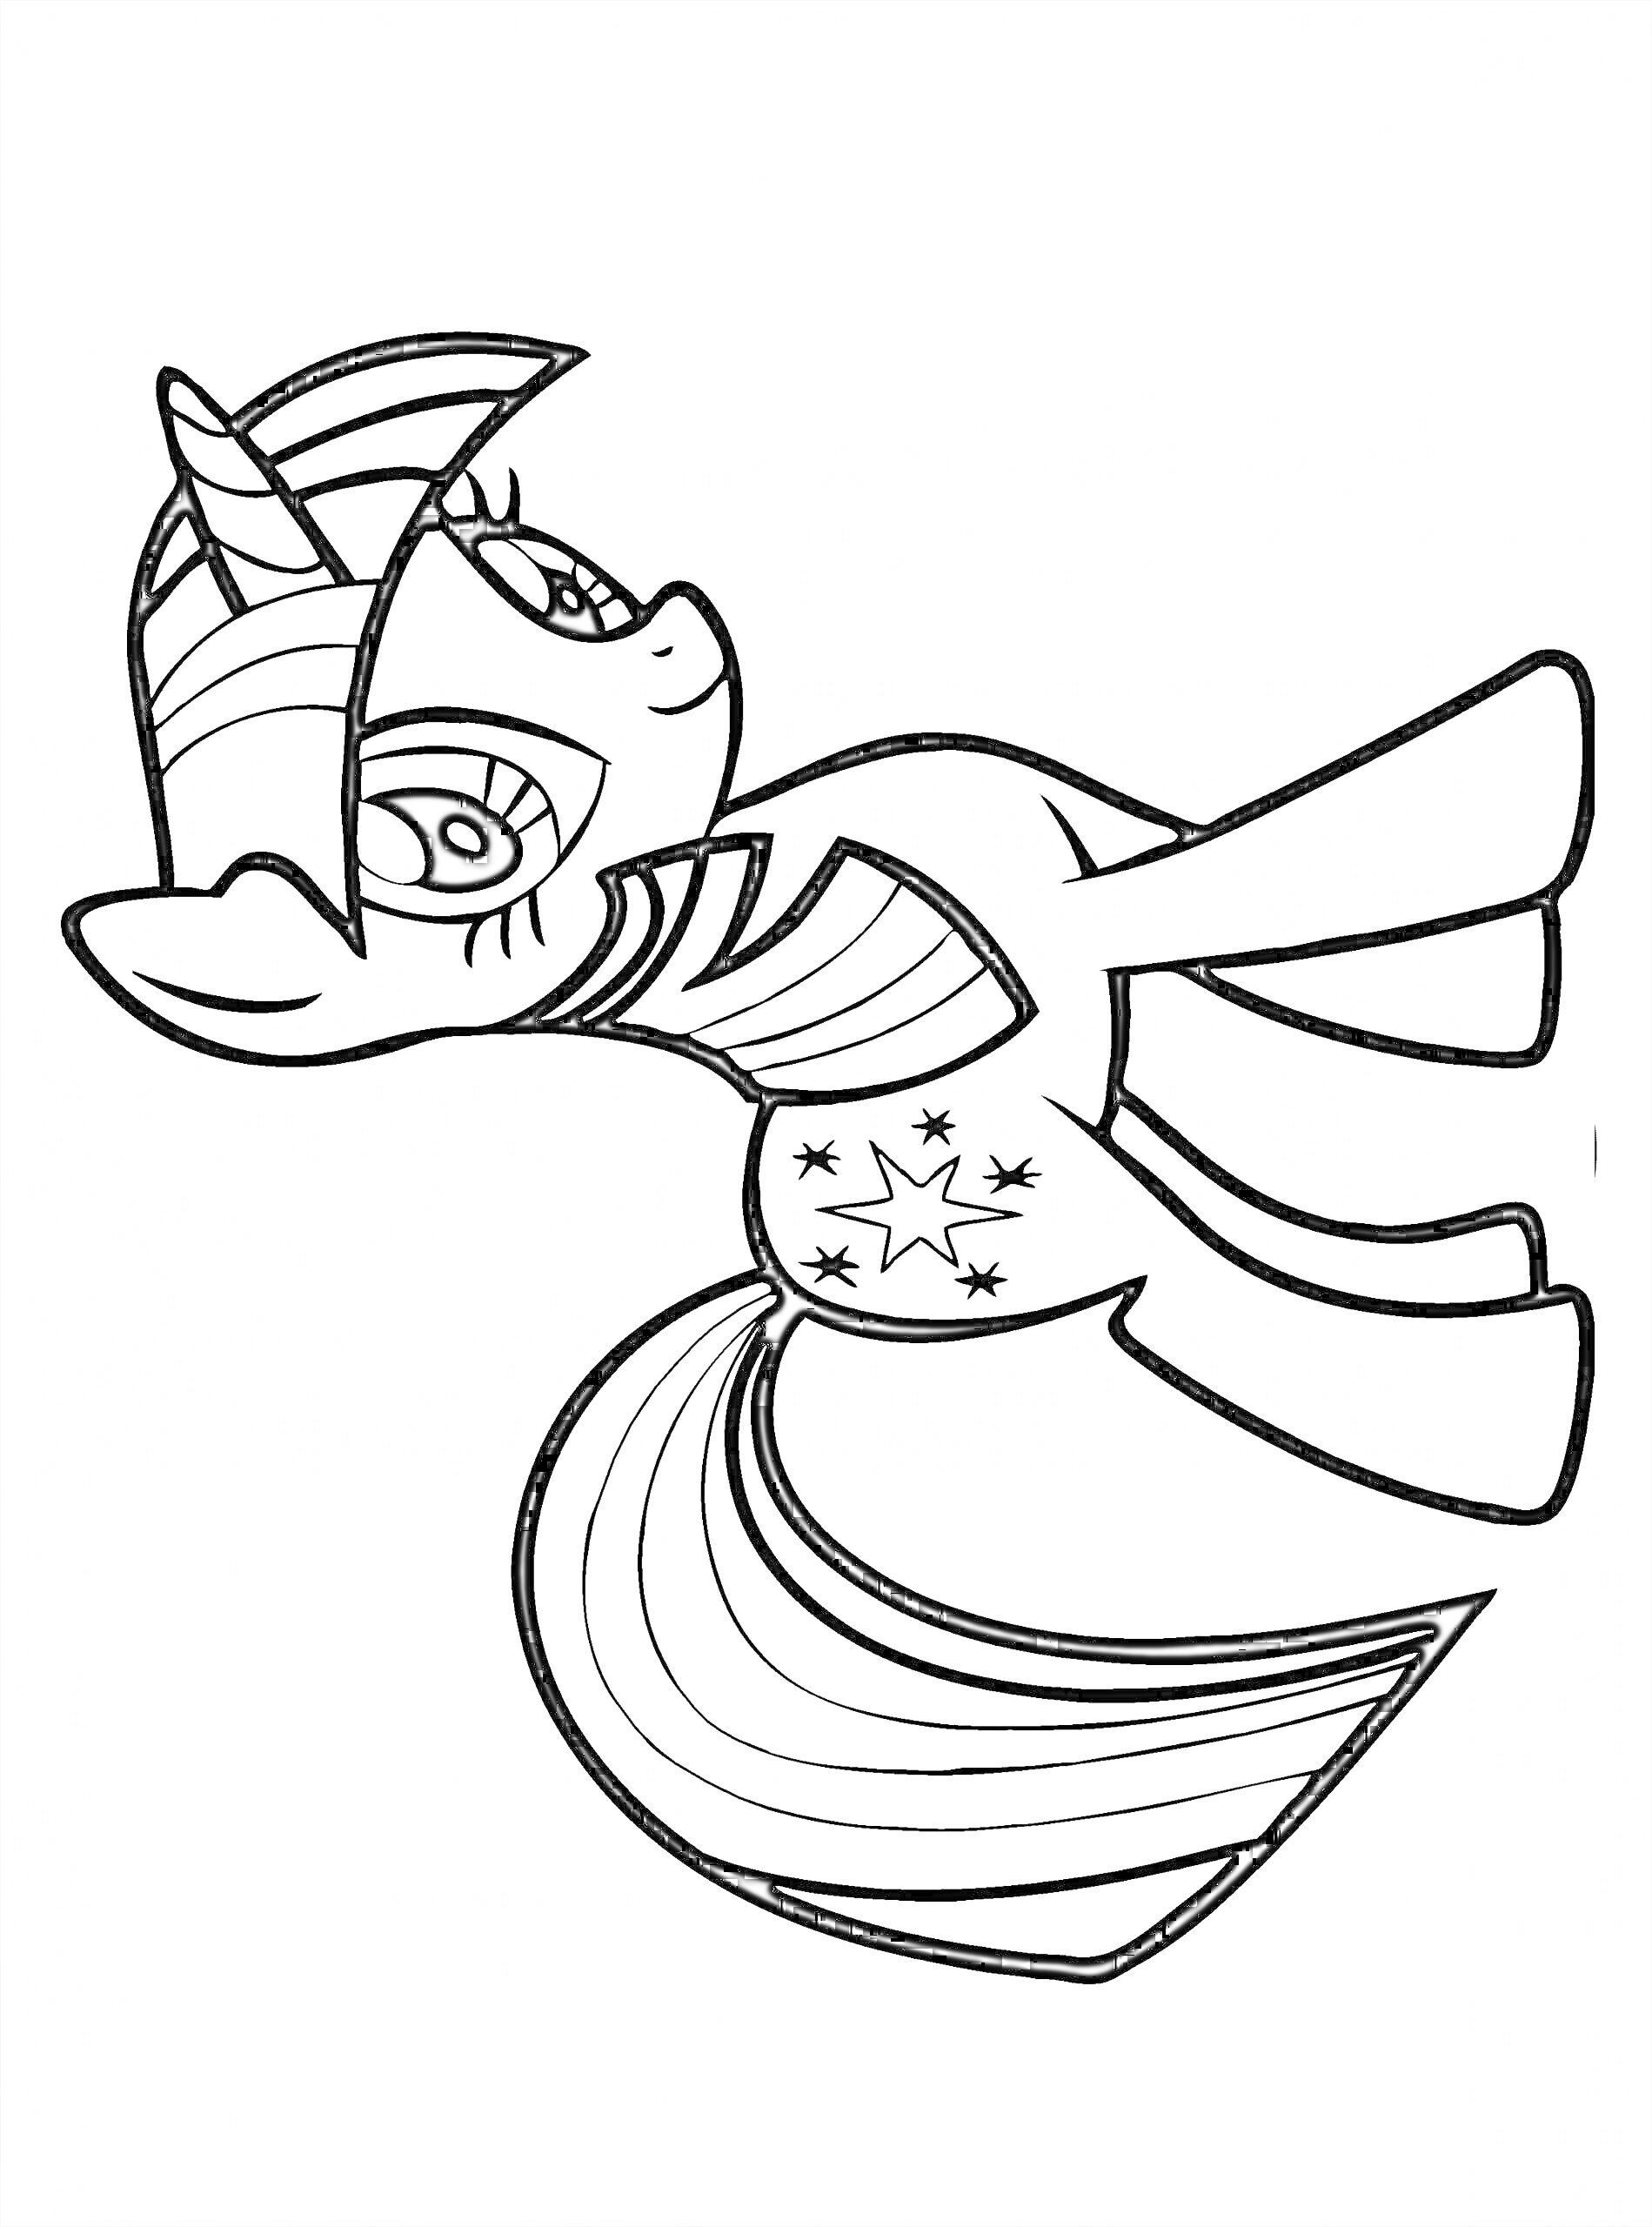 Раскраска Единорог с полосатой гривой и хвостом и звездами на теле